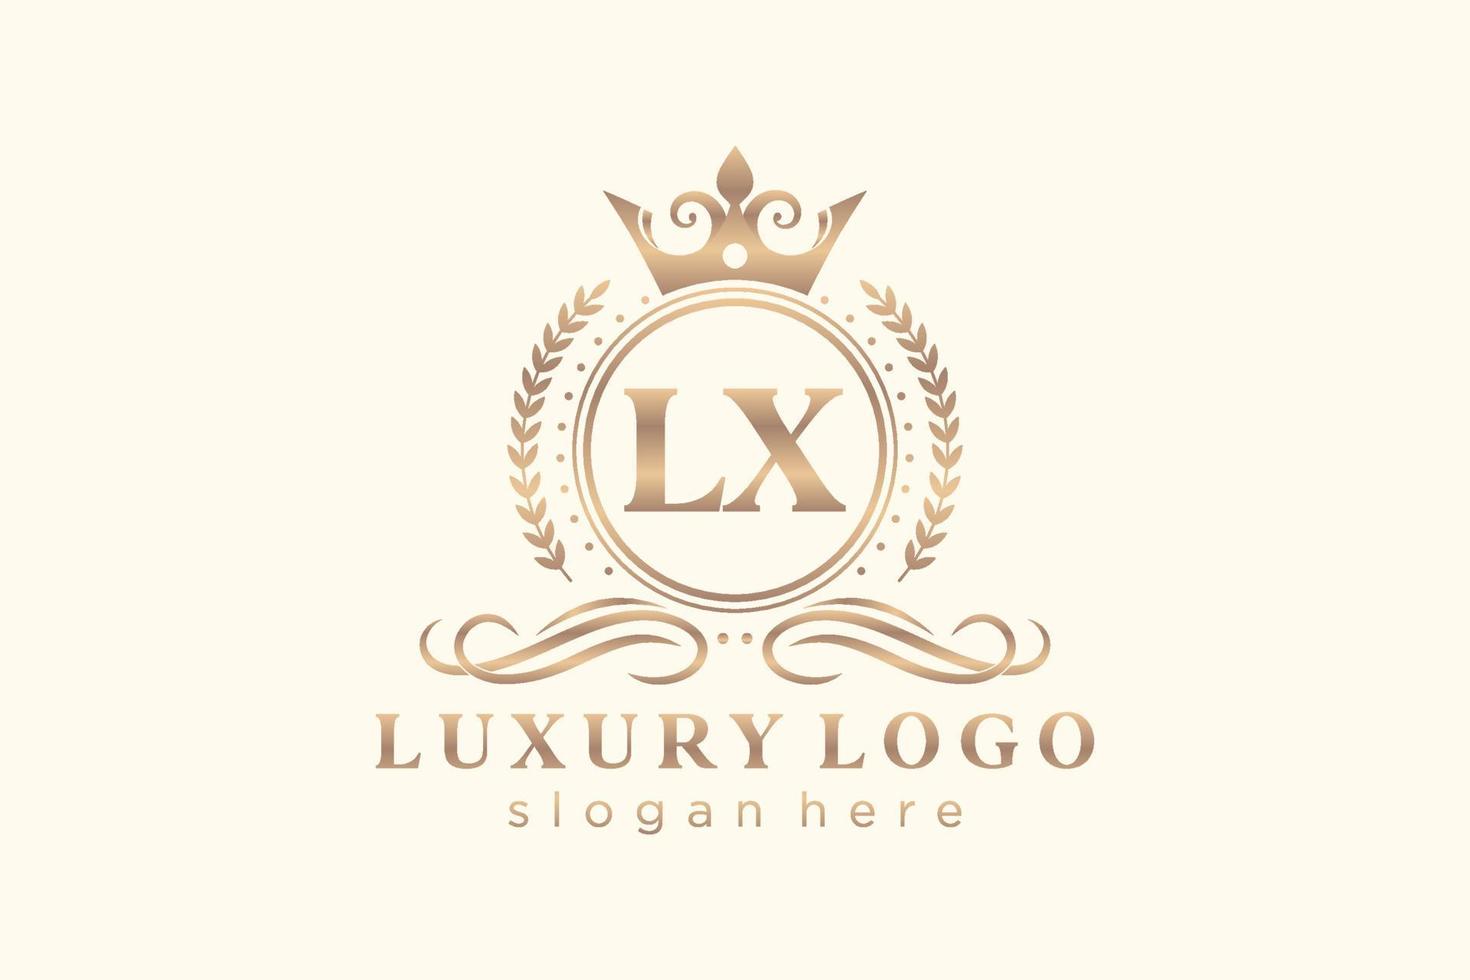 plantilla de logotipo de lujo real de letra lx inicial en arte vectorial para restaurante, realeza, boutique, cafetería, hotel, heráldico, joyería, moda y otras ilustraciones vectoriales. vector